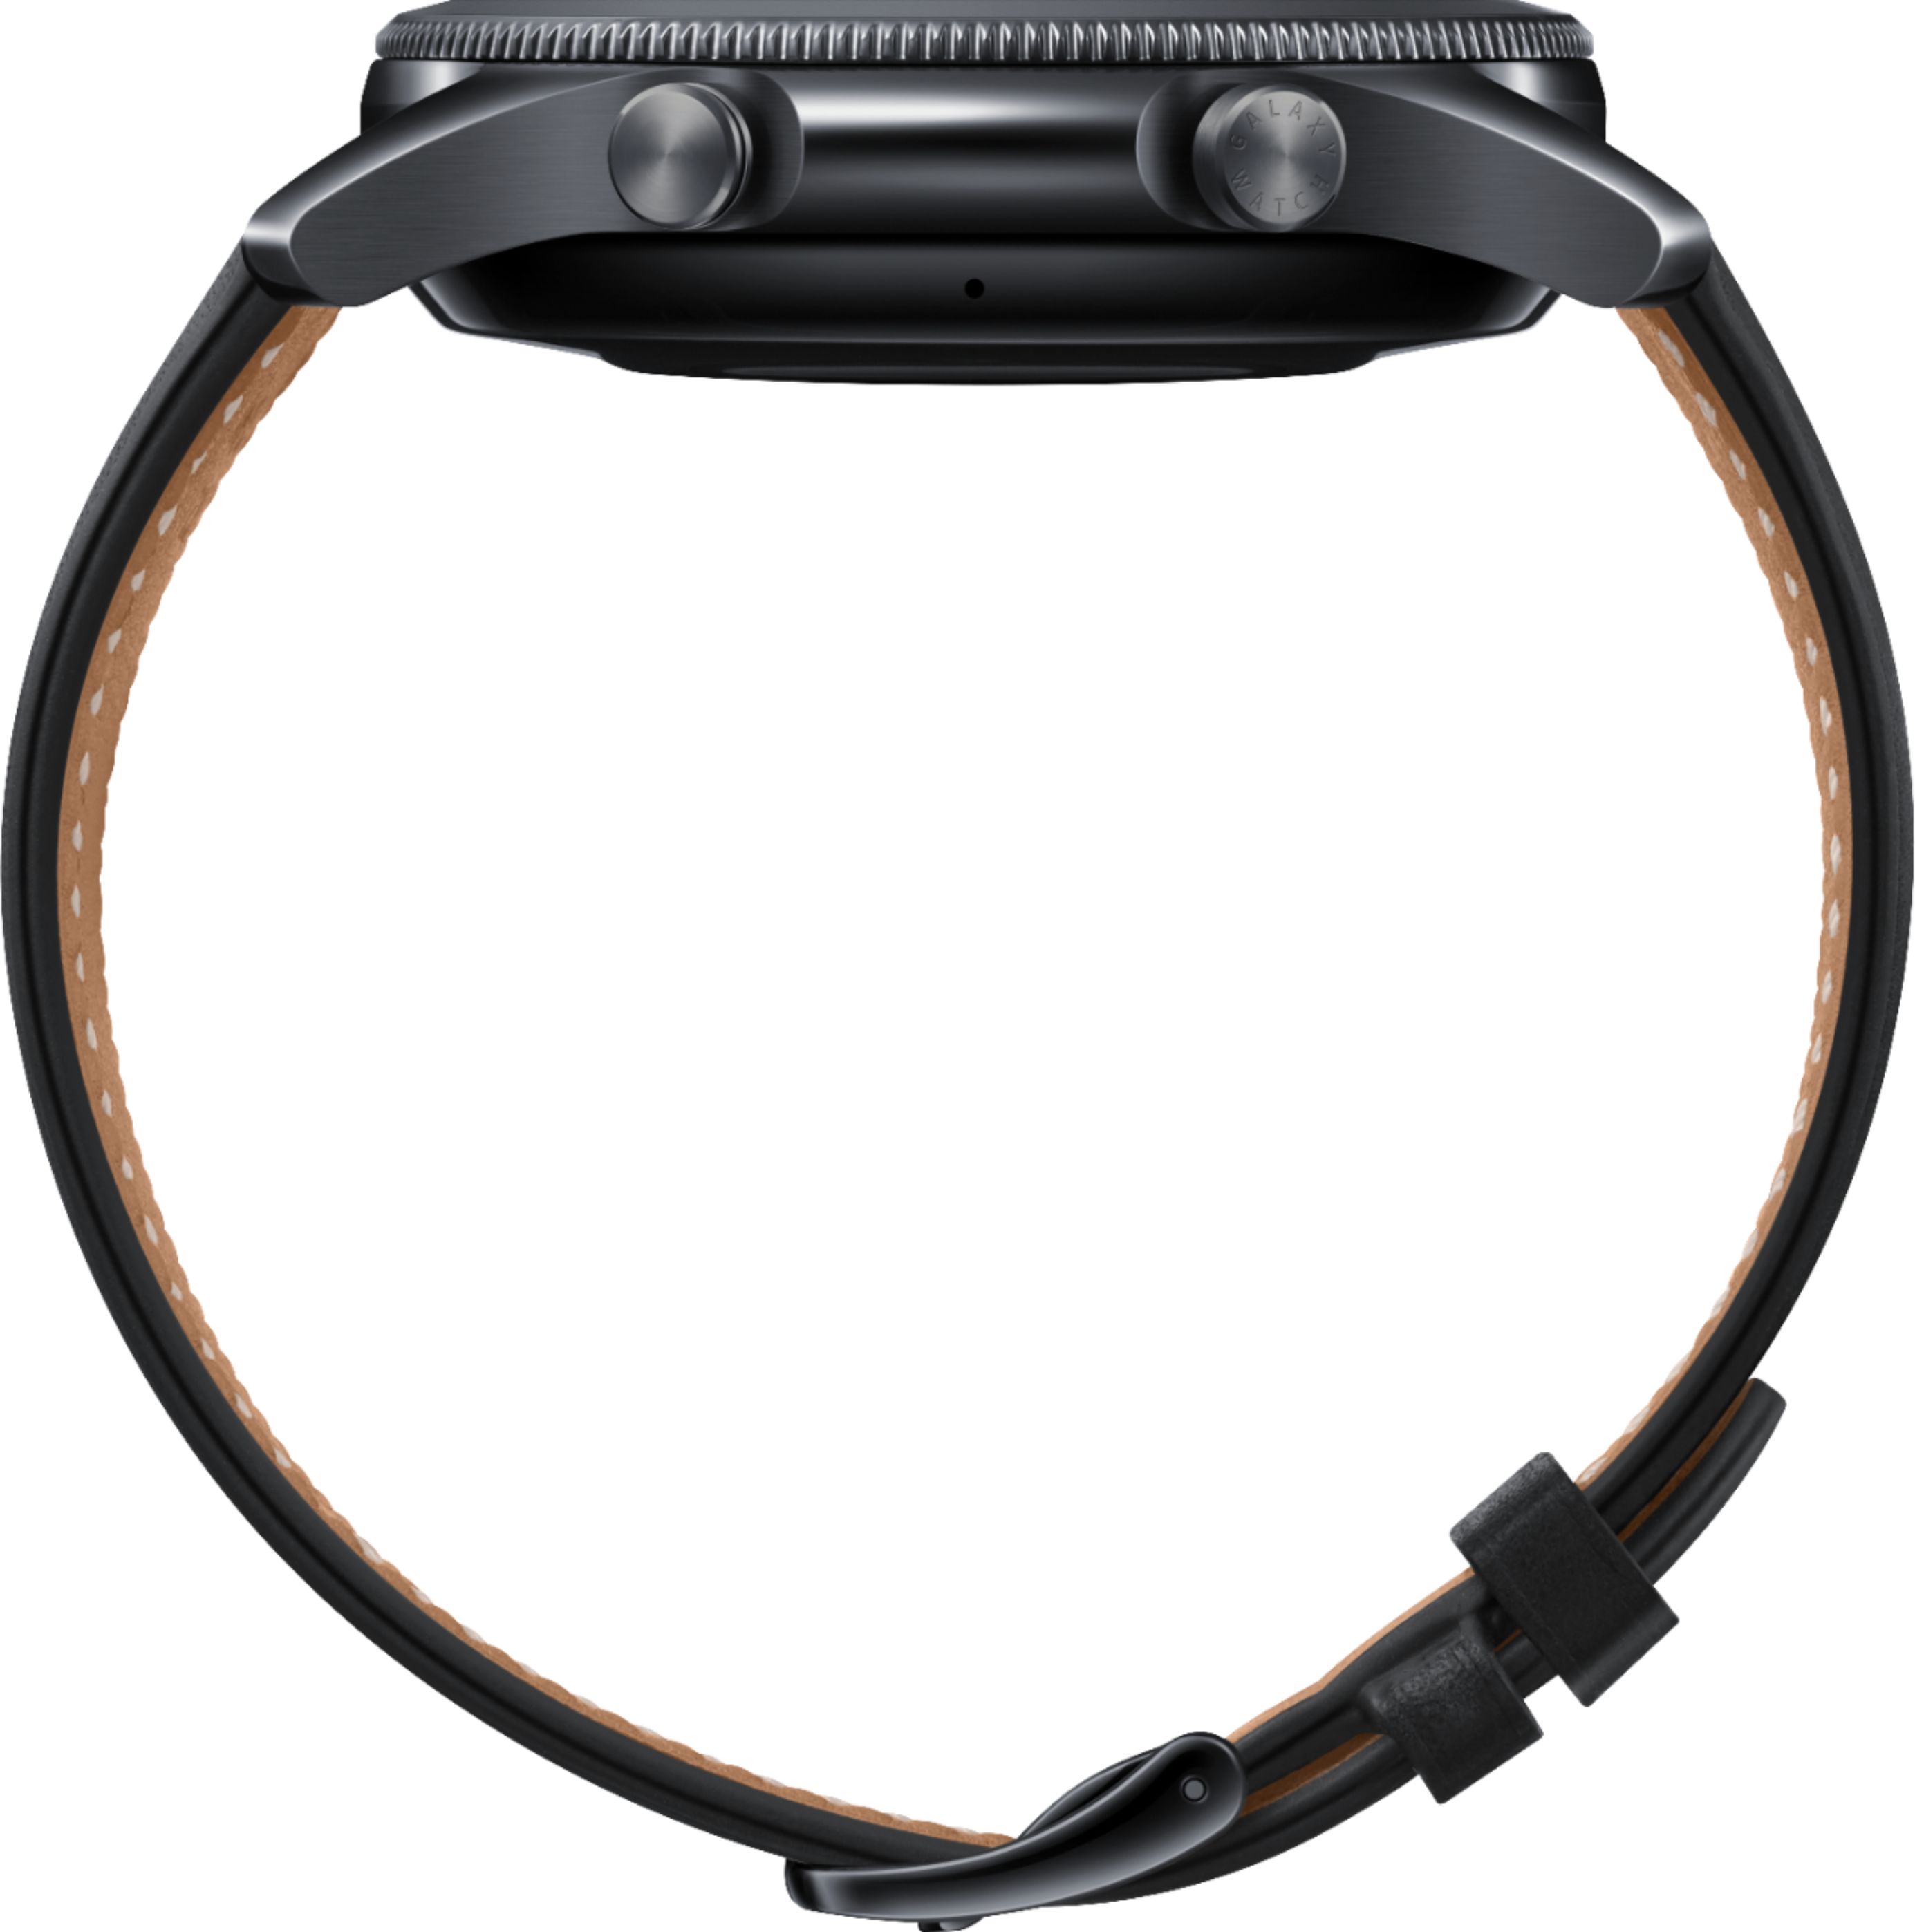 Best Buy Samsung Galaxy Watch3 Smartwatch 45mm Stainless Bt Mystic Black Sm R840nzkaxar